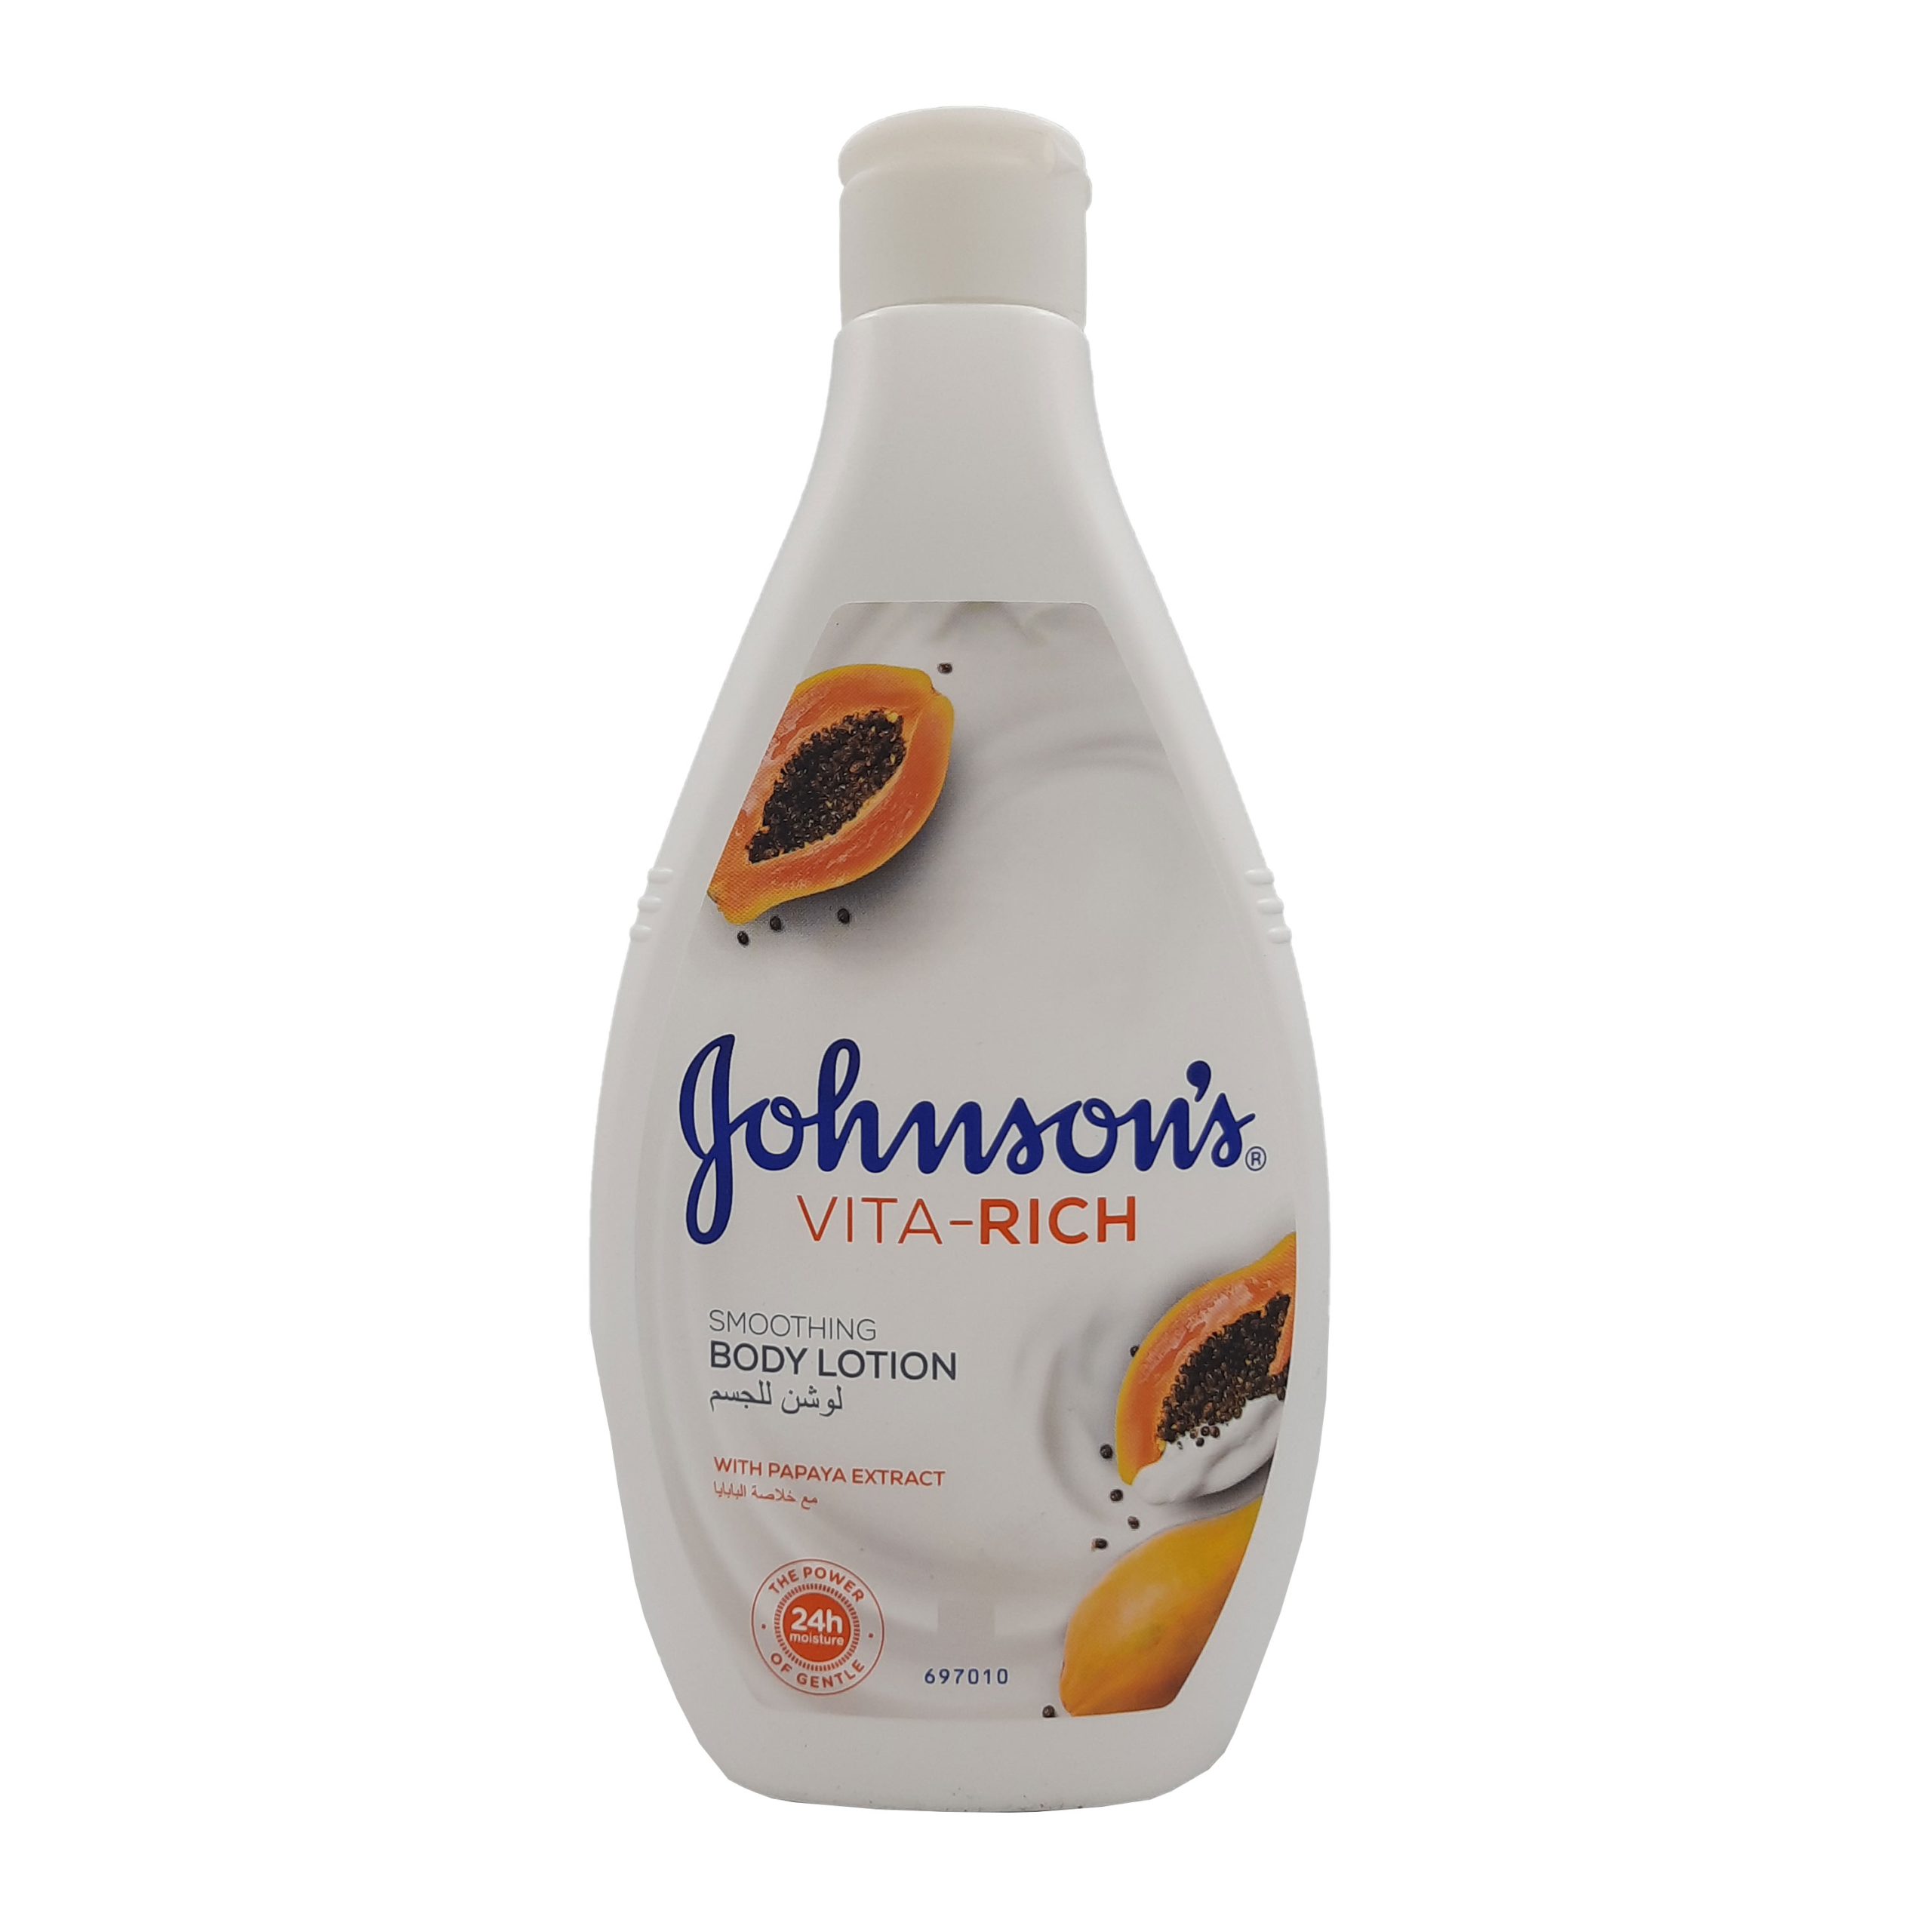 جونسون لوشن للجسم بخلاصة البابايا - Johnson body lotion with papaya extract  400ml - نجوم البتراء